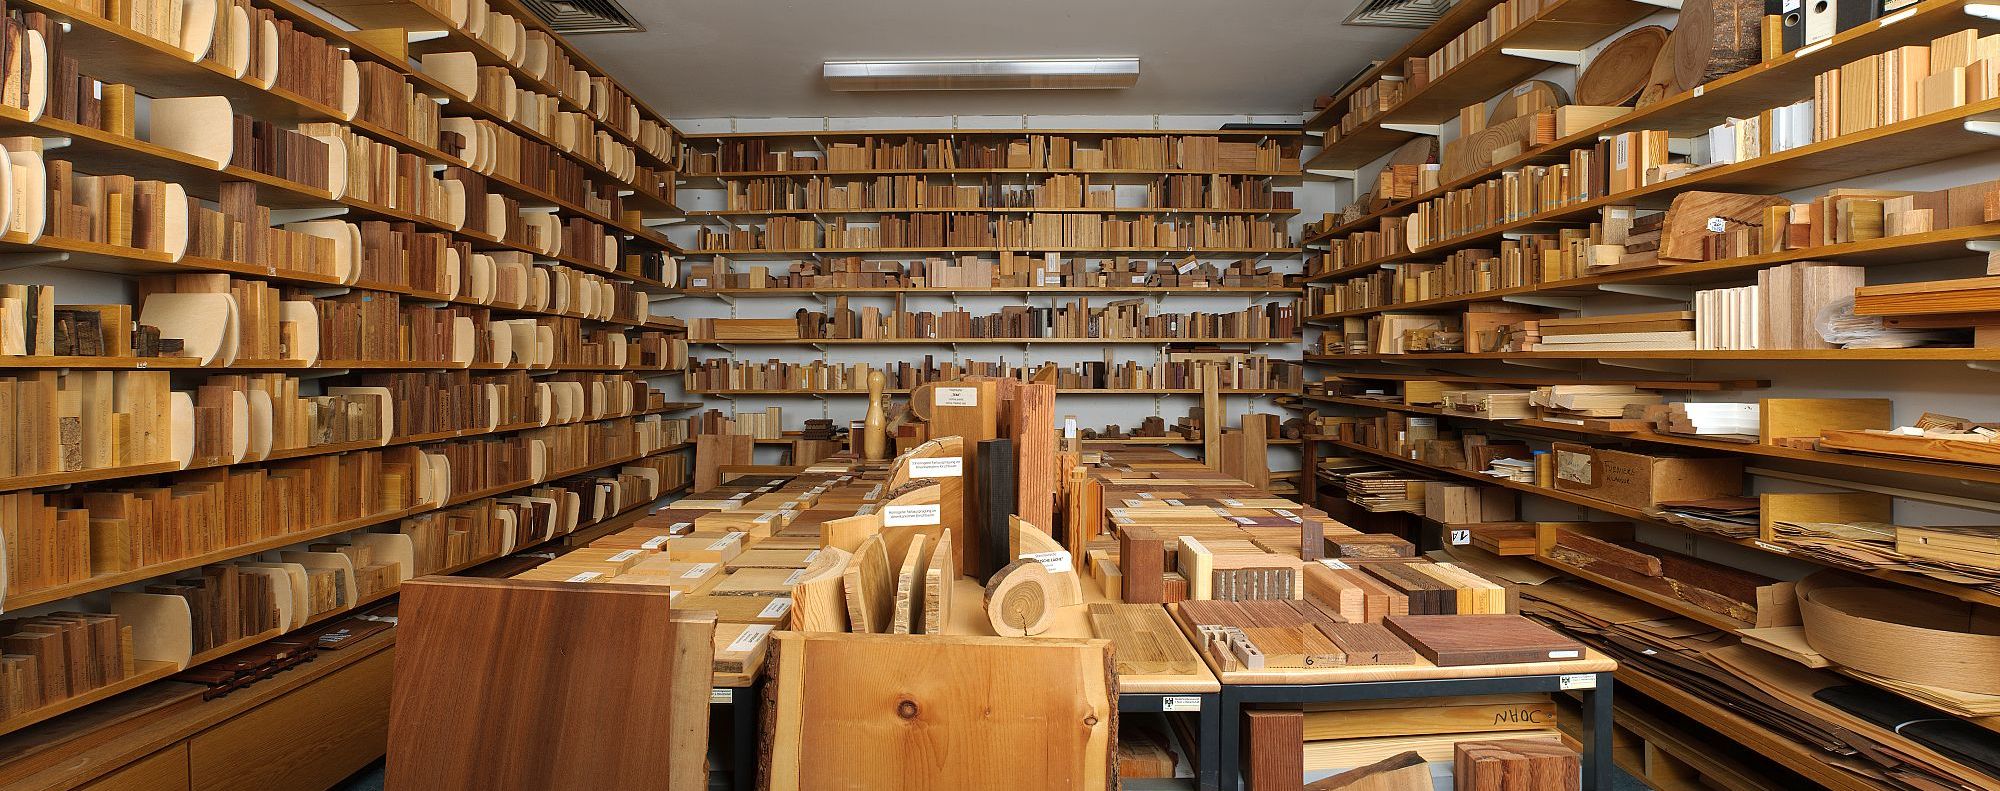 Ein Raum mit verschiedensten Holzmustern in Regalen und auf Tischen